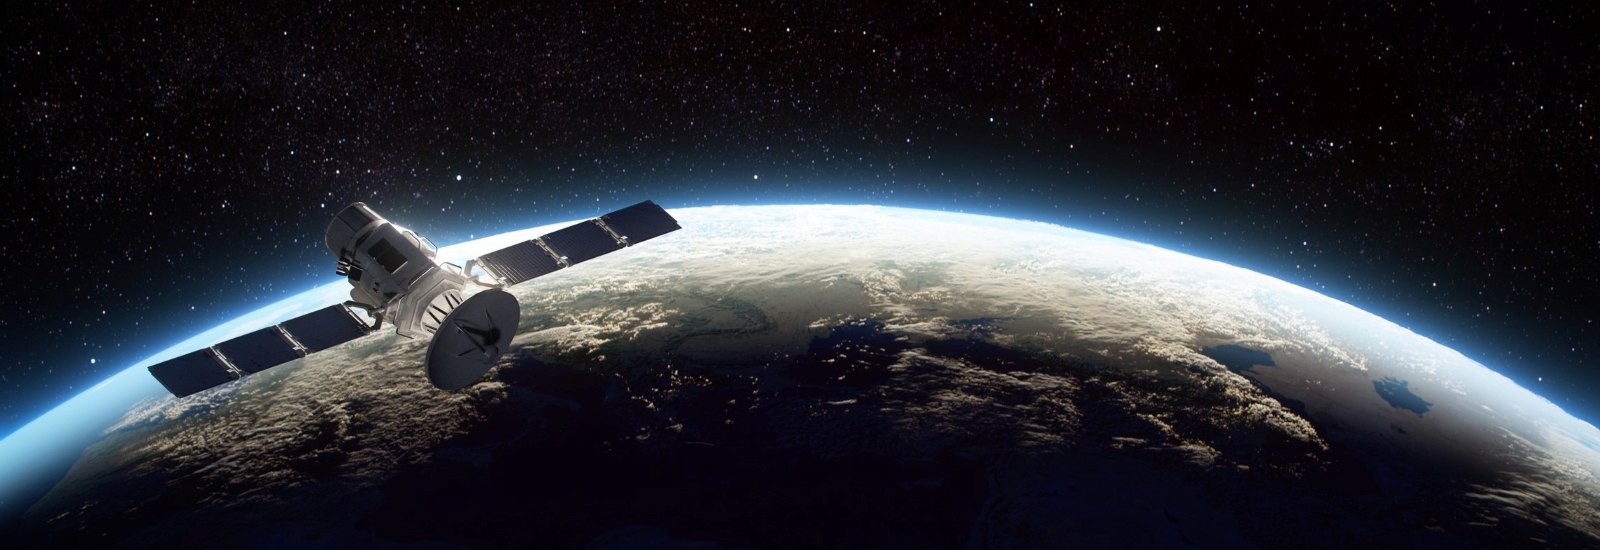 ソニーらの開発した超小型人工衛星が地上局との通信に成功。春には一般に向けたサービスも予定。